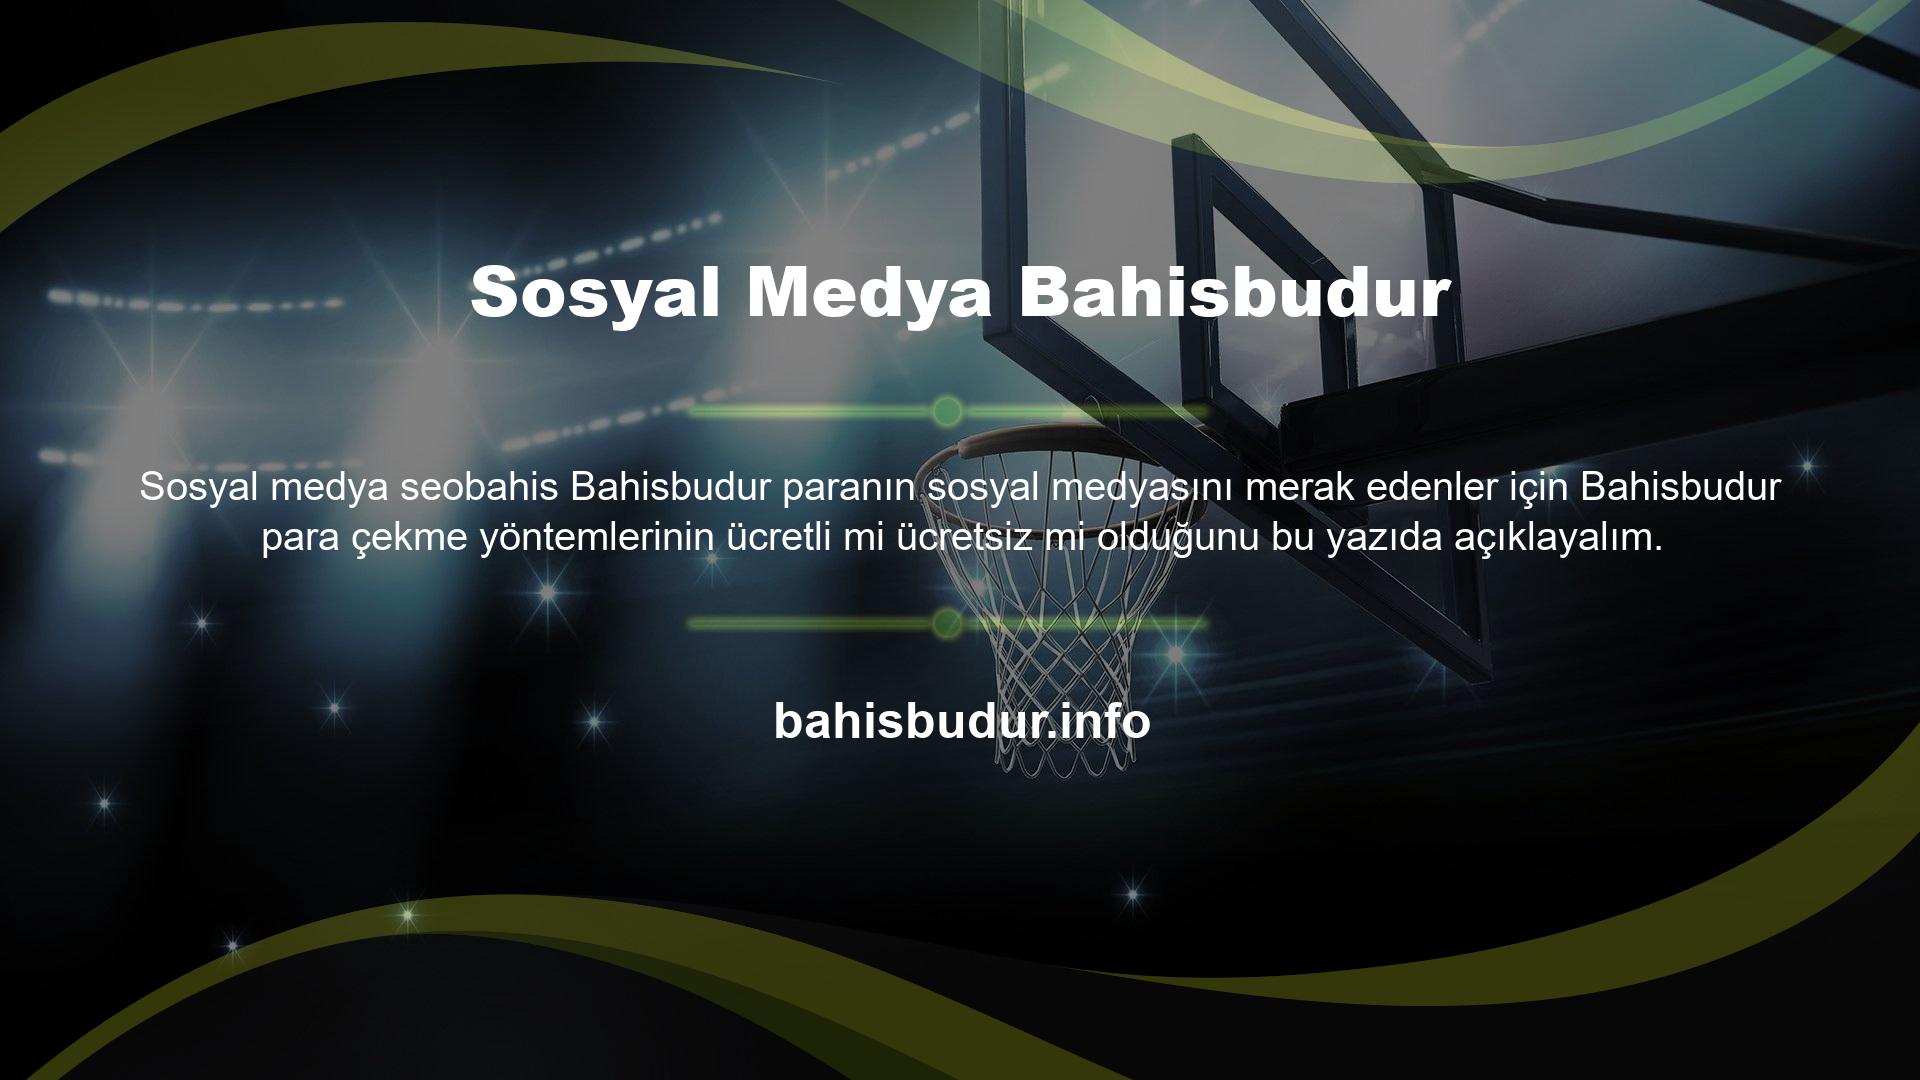 Bahisbudur web sitesi, müşterilerinin çekim ilgisini sürekli olarak tatmin eden en güvenilir ve nitelikli bahisçilerden biridir